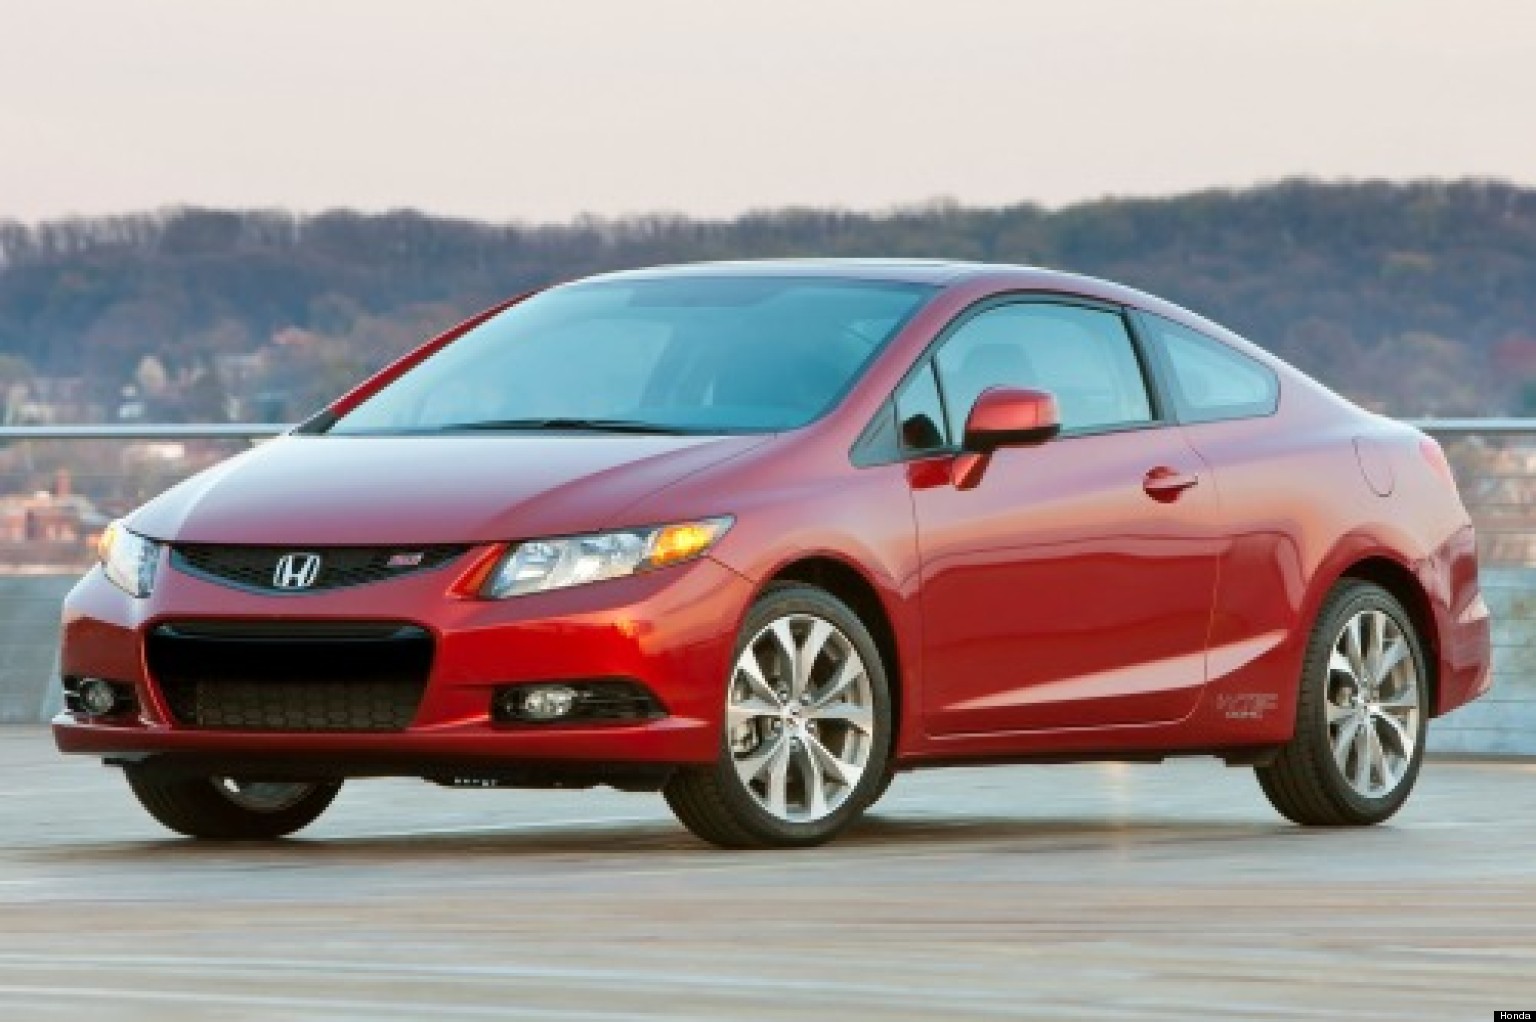 Descubre al nuevo Honda Civic Coupe 2013 | HuffPost